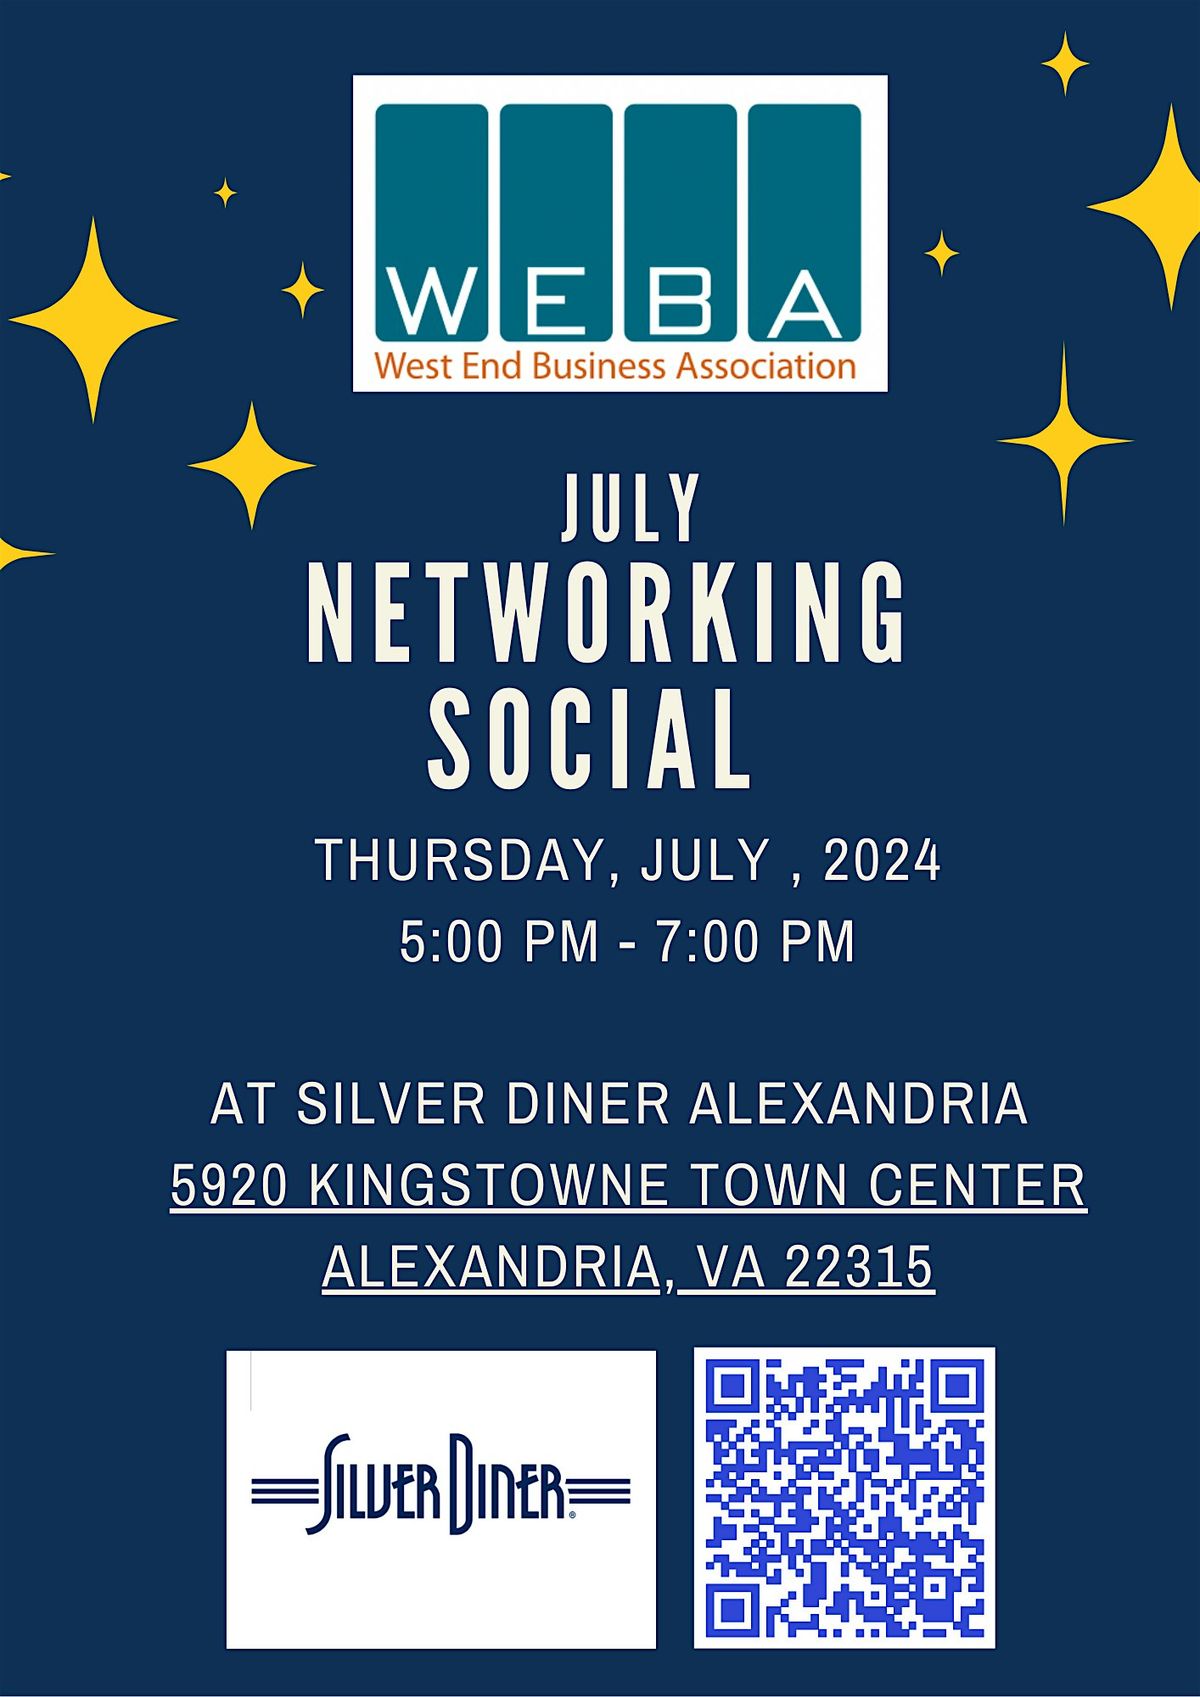 WEBA July Networking Social at Silver Diner